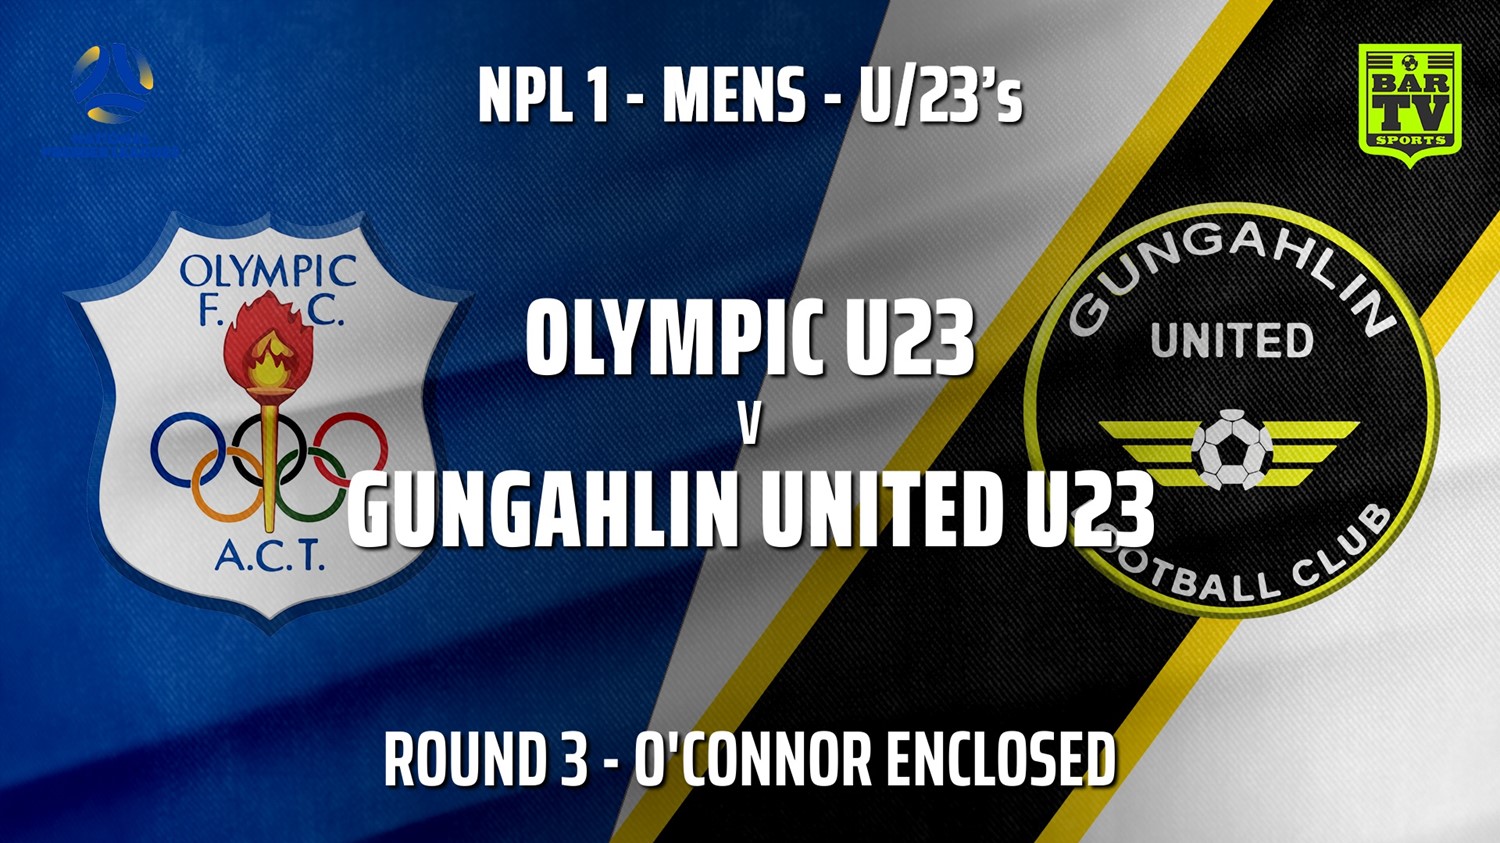 210421-NPL1 U23 Capital Round 3 - Canberra Olympic U23 v Gungahlin United U23 Minigame Slate Image